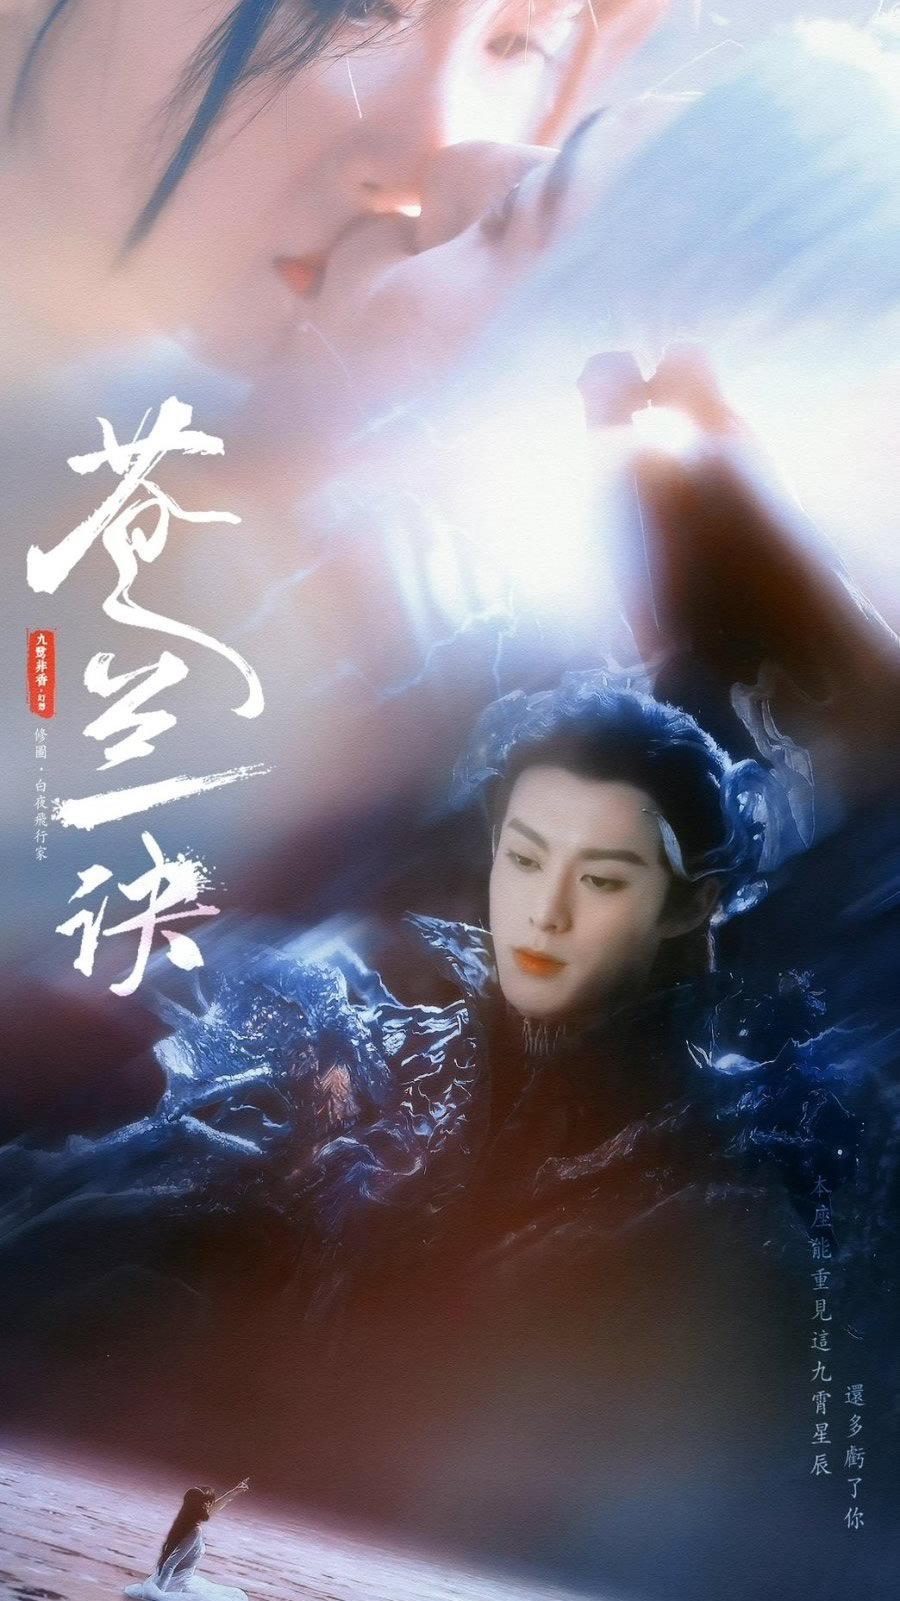 Amor entre Fada e Demônio | Série dorama chinês com Yu ShuXin e Dylan Wang na Netflix, baseada no romance de Jiu Lu Fei Xiang